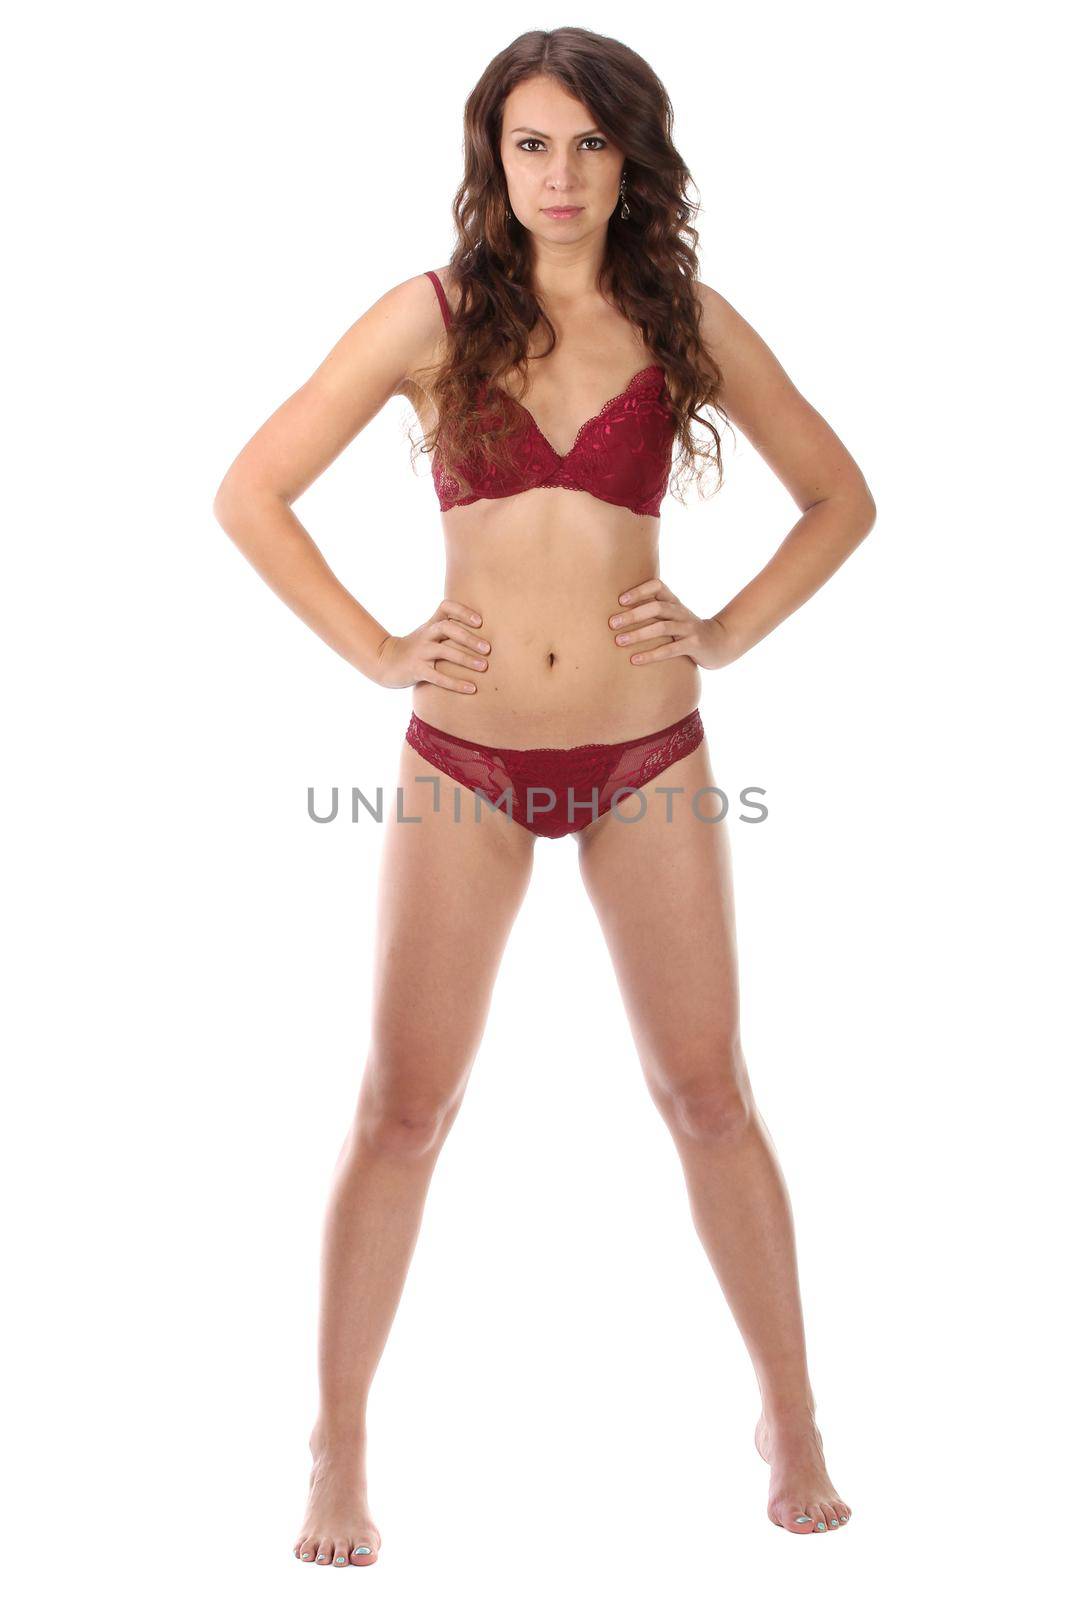 Beautiful full body brunette beauty woman in sexy underwear by gsdonlin